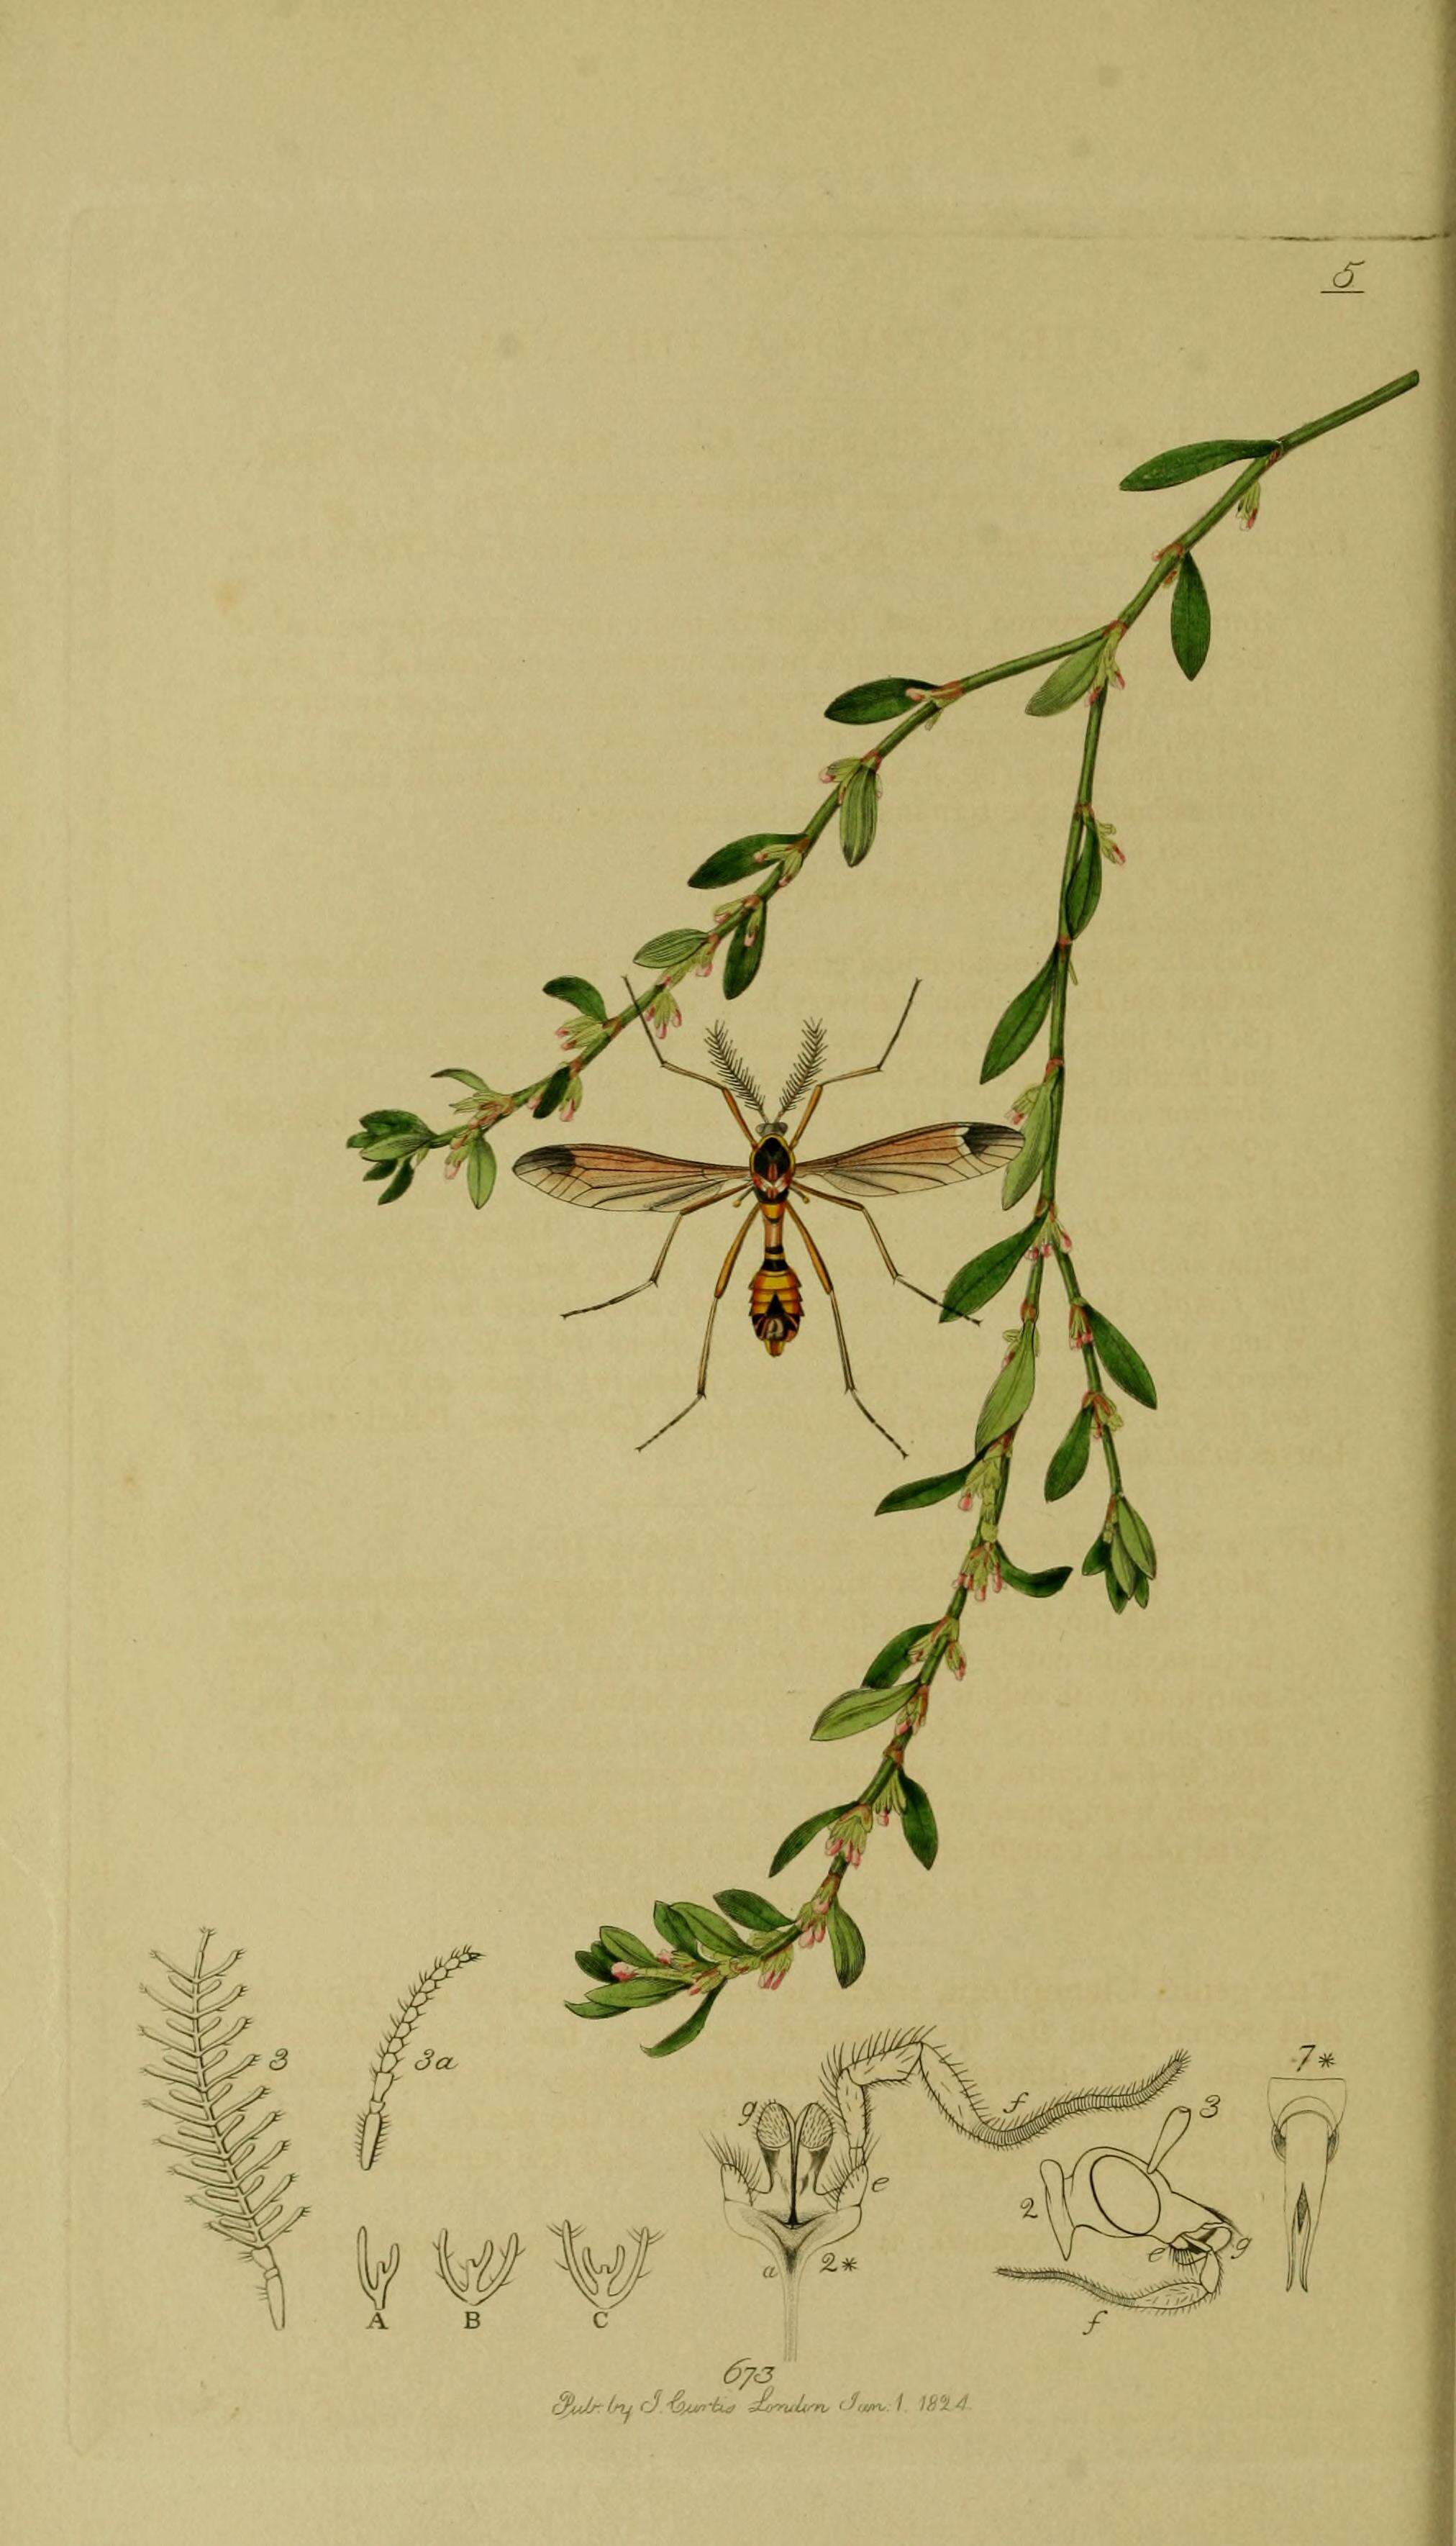 Image of Ctenophora (Cnemoncosis) ornata Meigen 1818